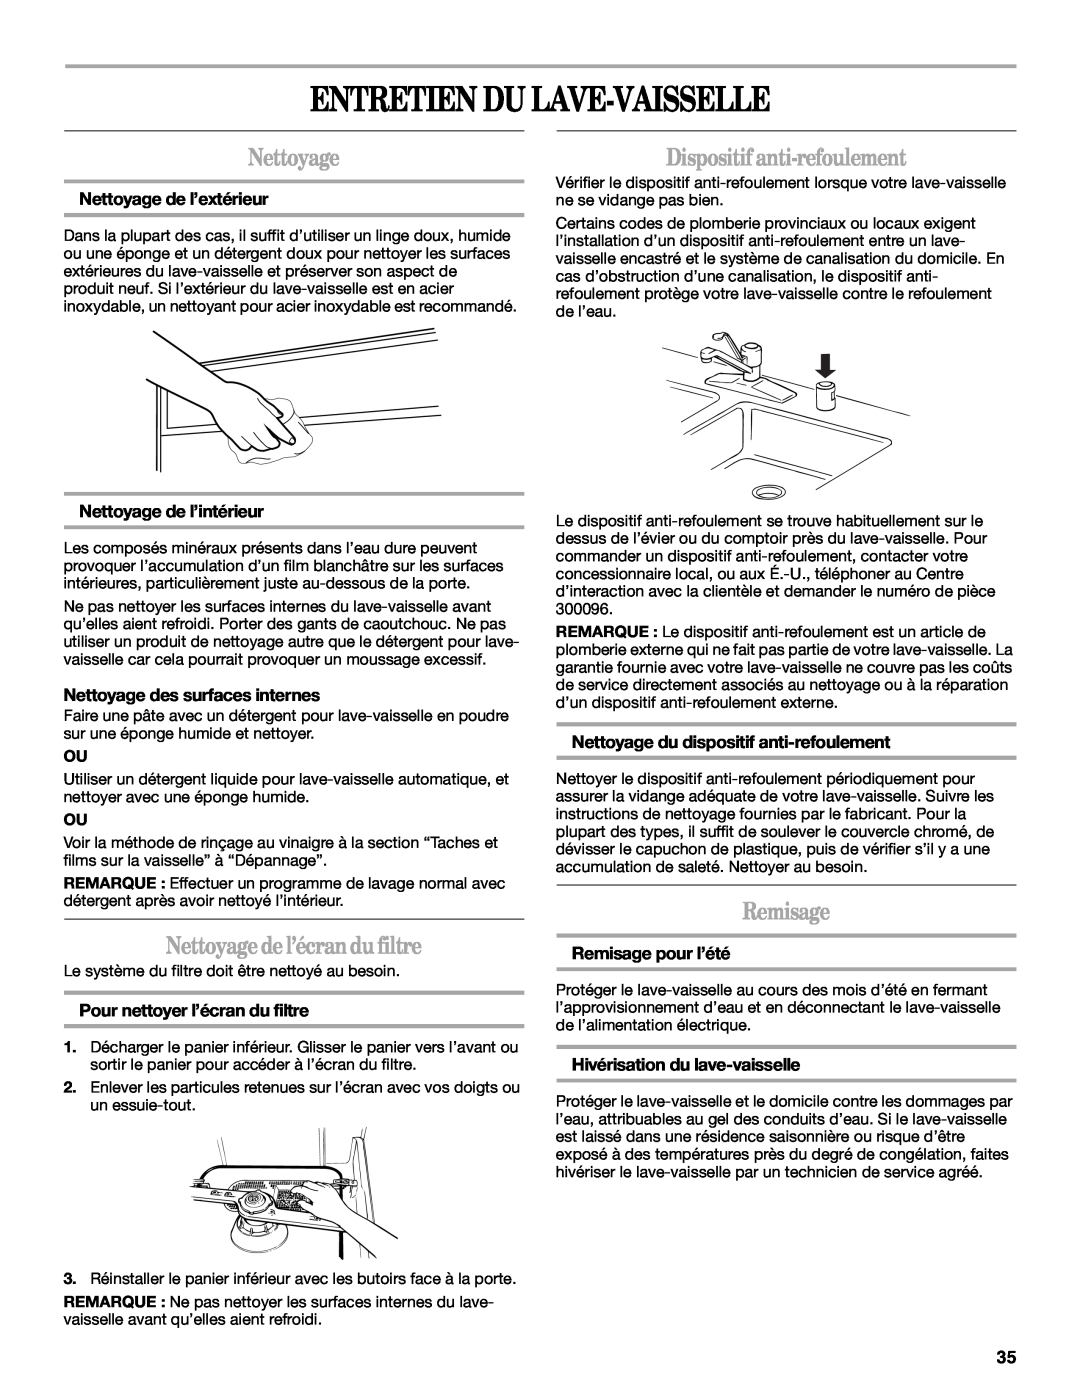 Whirlpool 810 manual Entretien Du Lave-Vaisselle, Nettoyagedel’écrandu filtre, Dispositifanti-refoulement, Remisage 